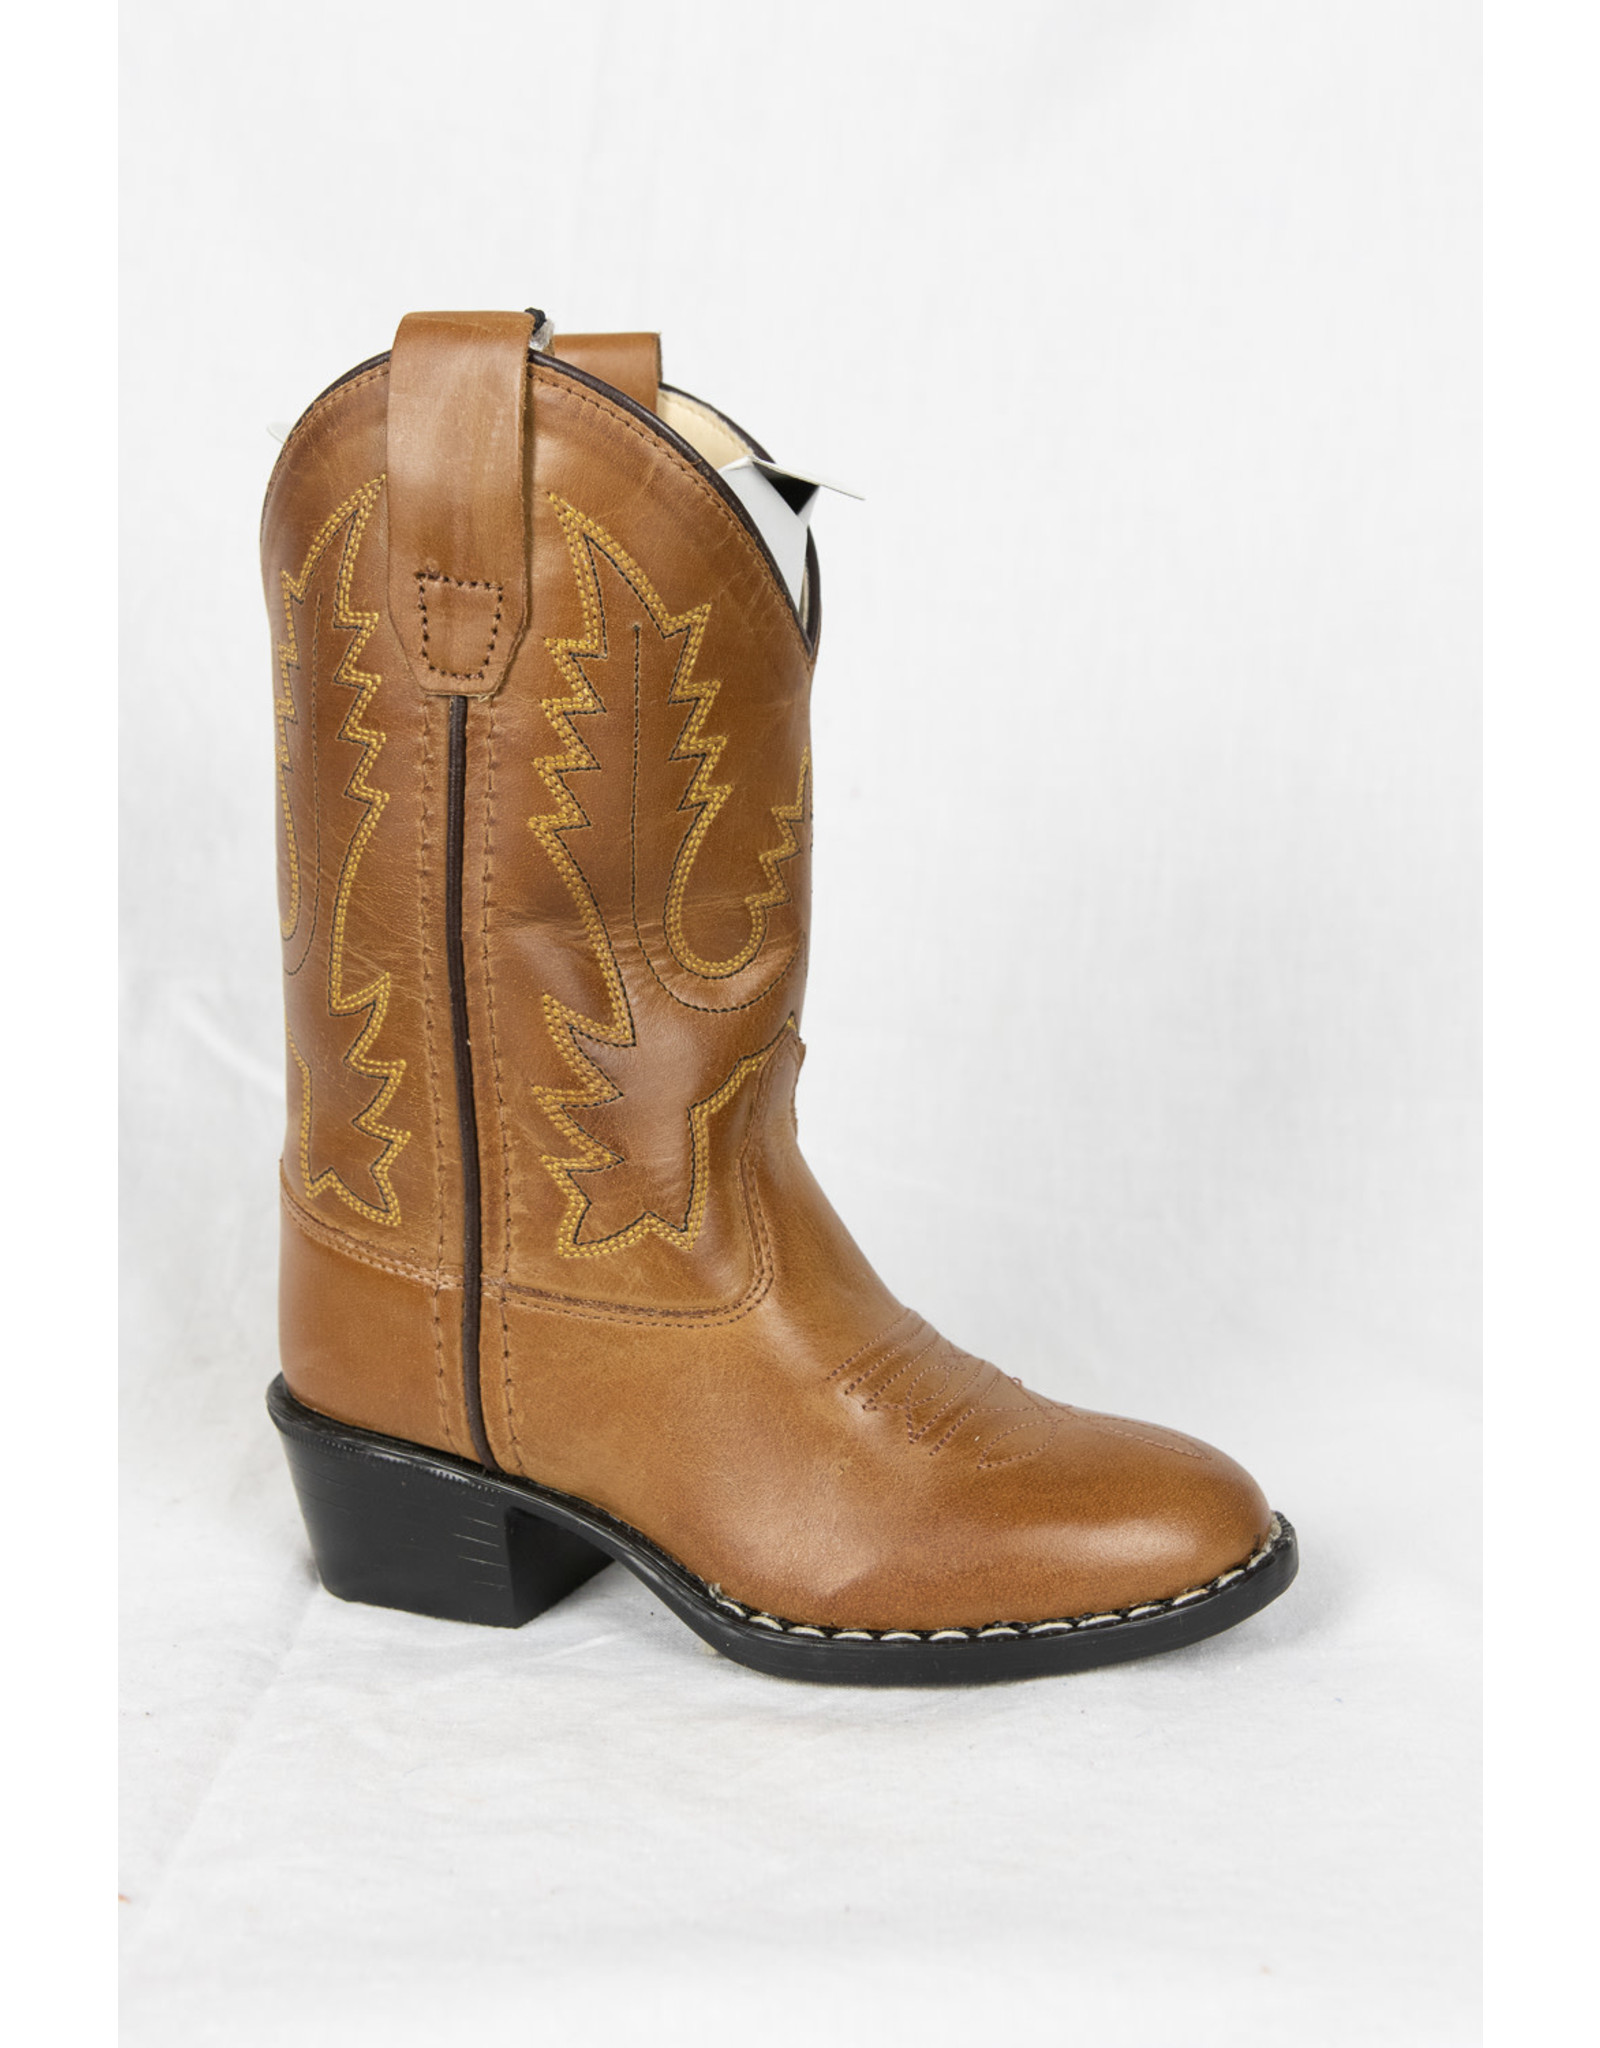 Brown Cowboy Boot 1129 - Big Valley 